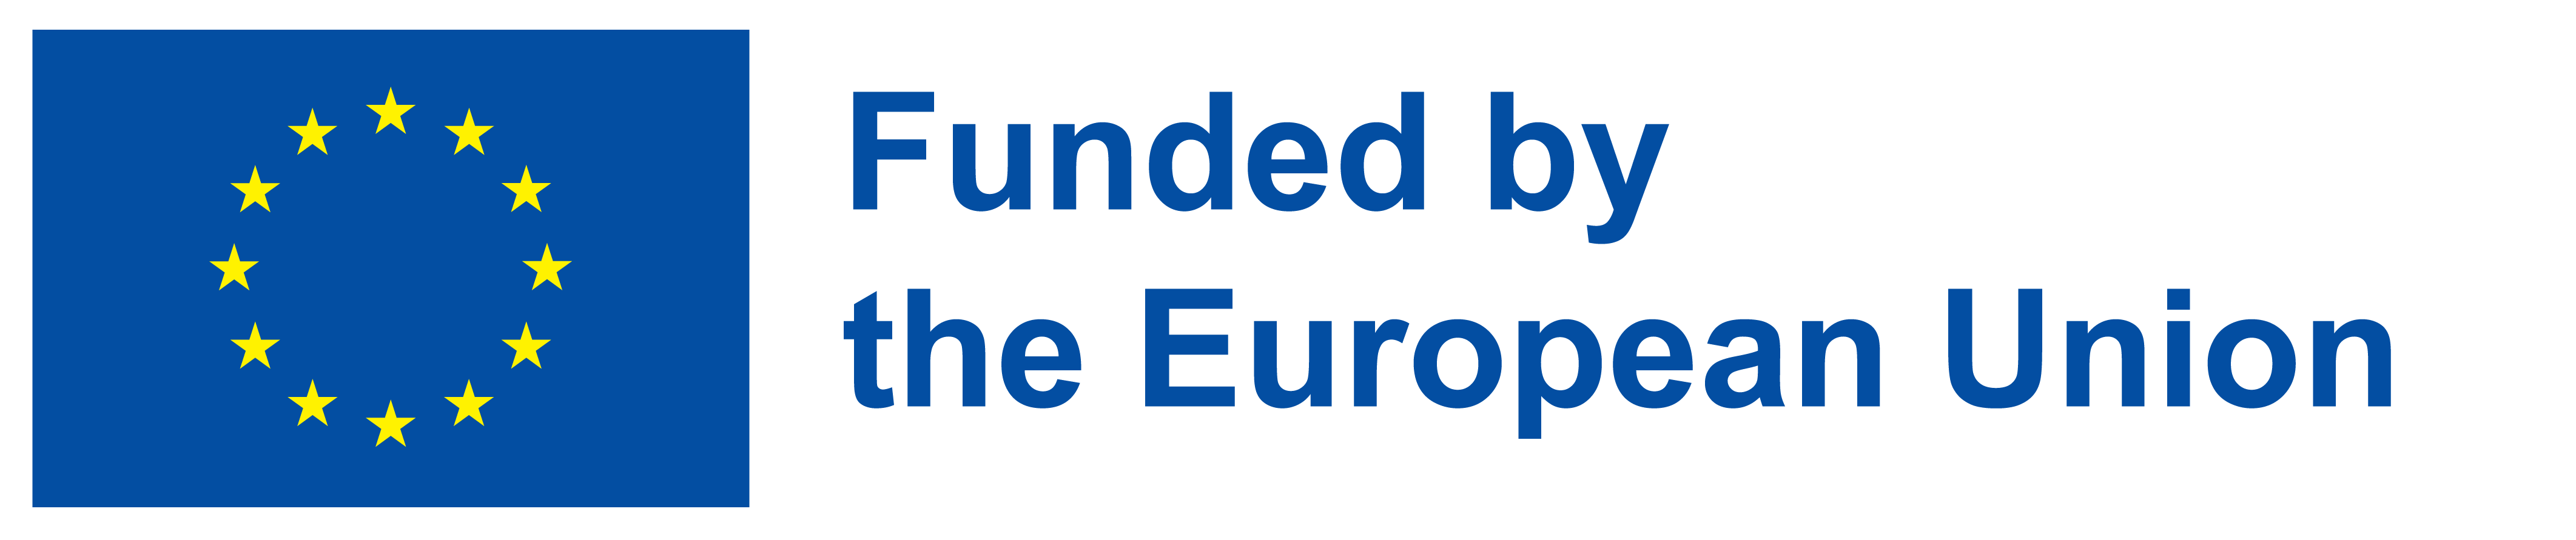 Logo financiación europea